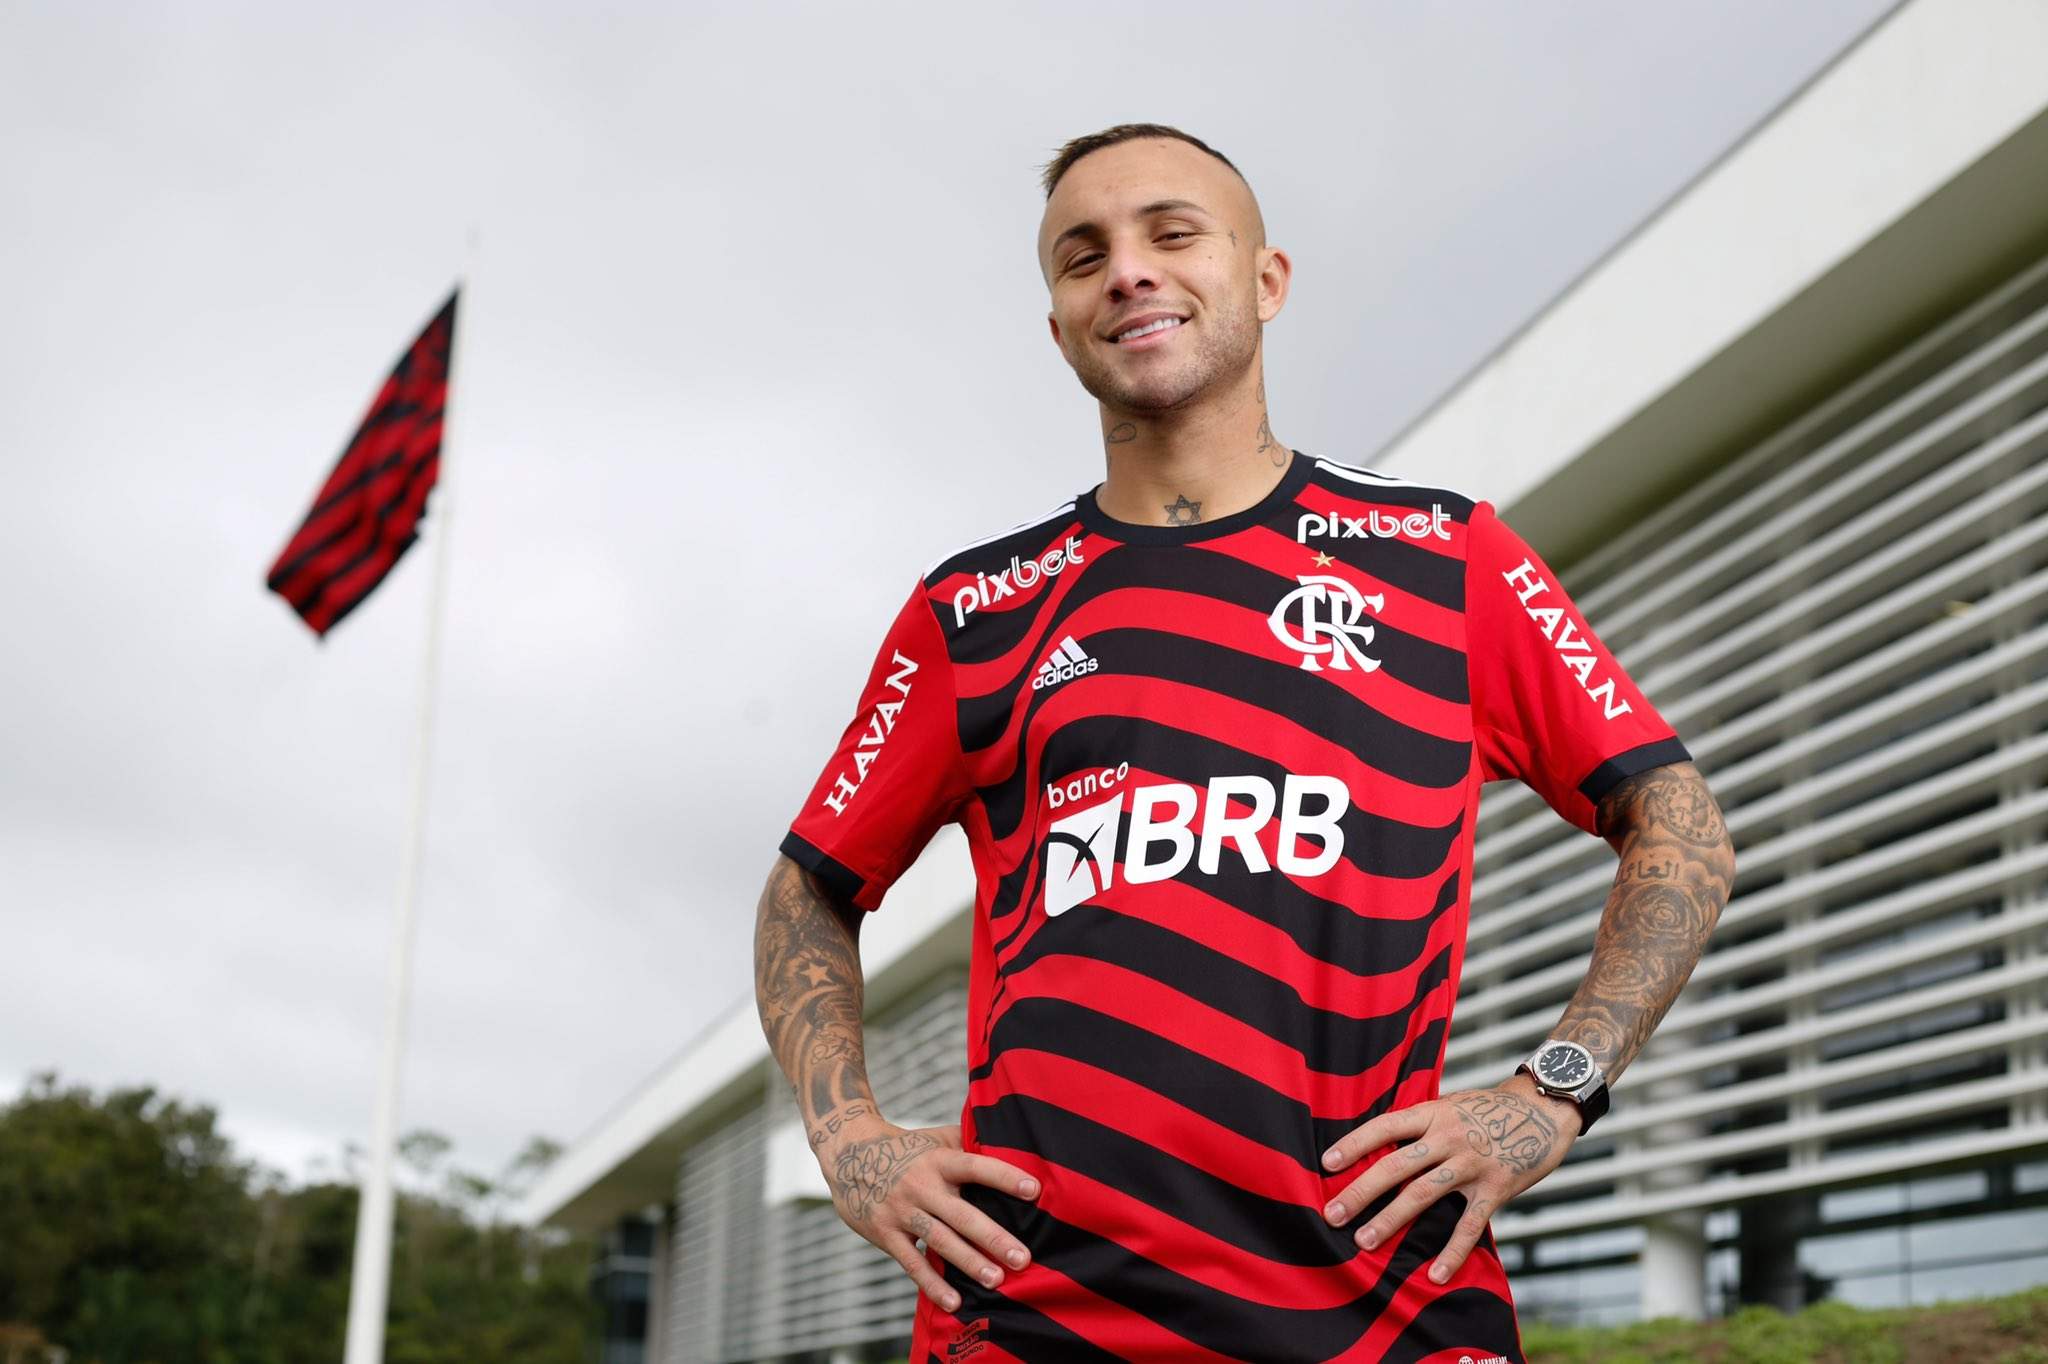 Valor da nova camisa do Flamengo recebe críticas de torcedores na